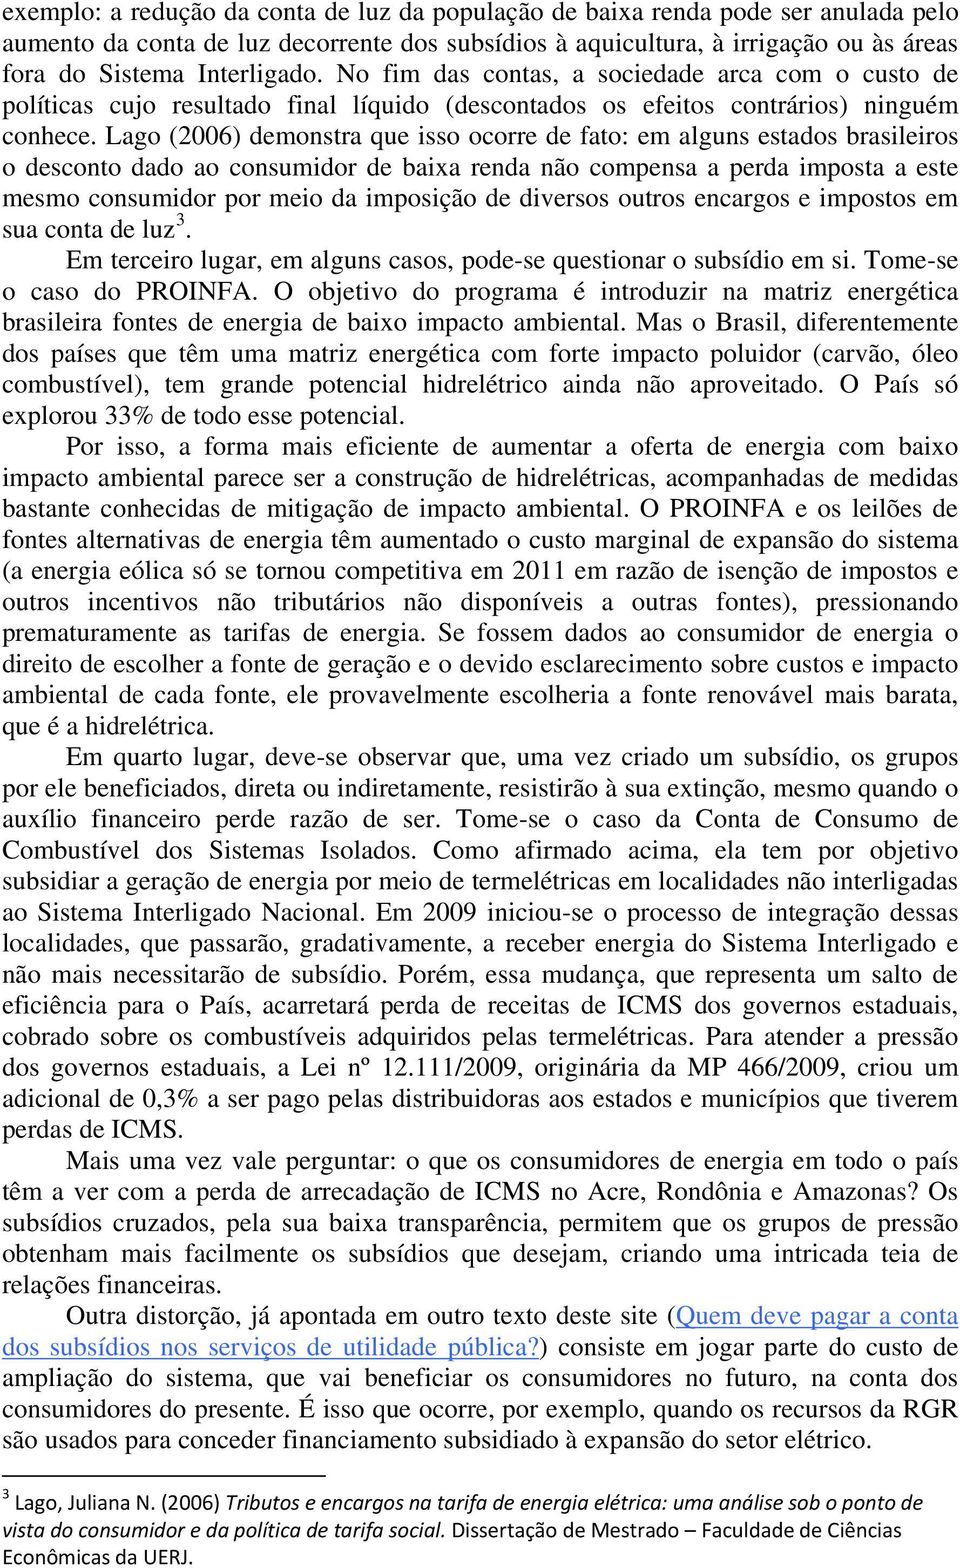 Lago (2006) demonstra que isso ocorre de fato: em alguns estados brasileiros o desconto dado ao consumidor de baixa renda não compensa a perda imposta a este mesmo consumidor por meio da imposição de